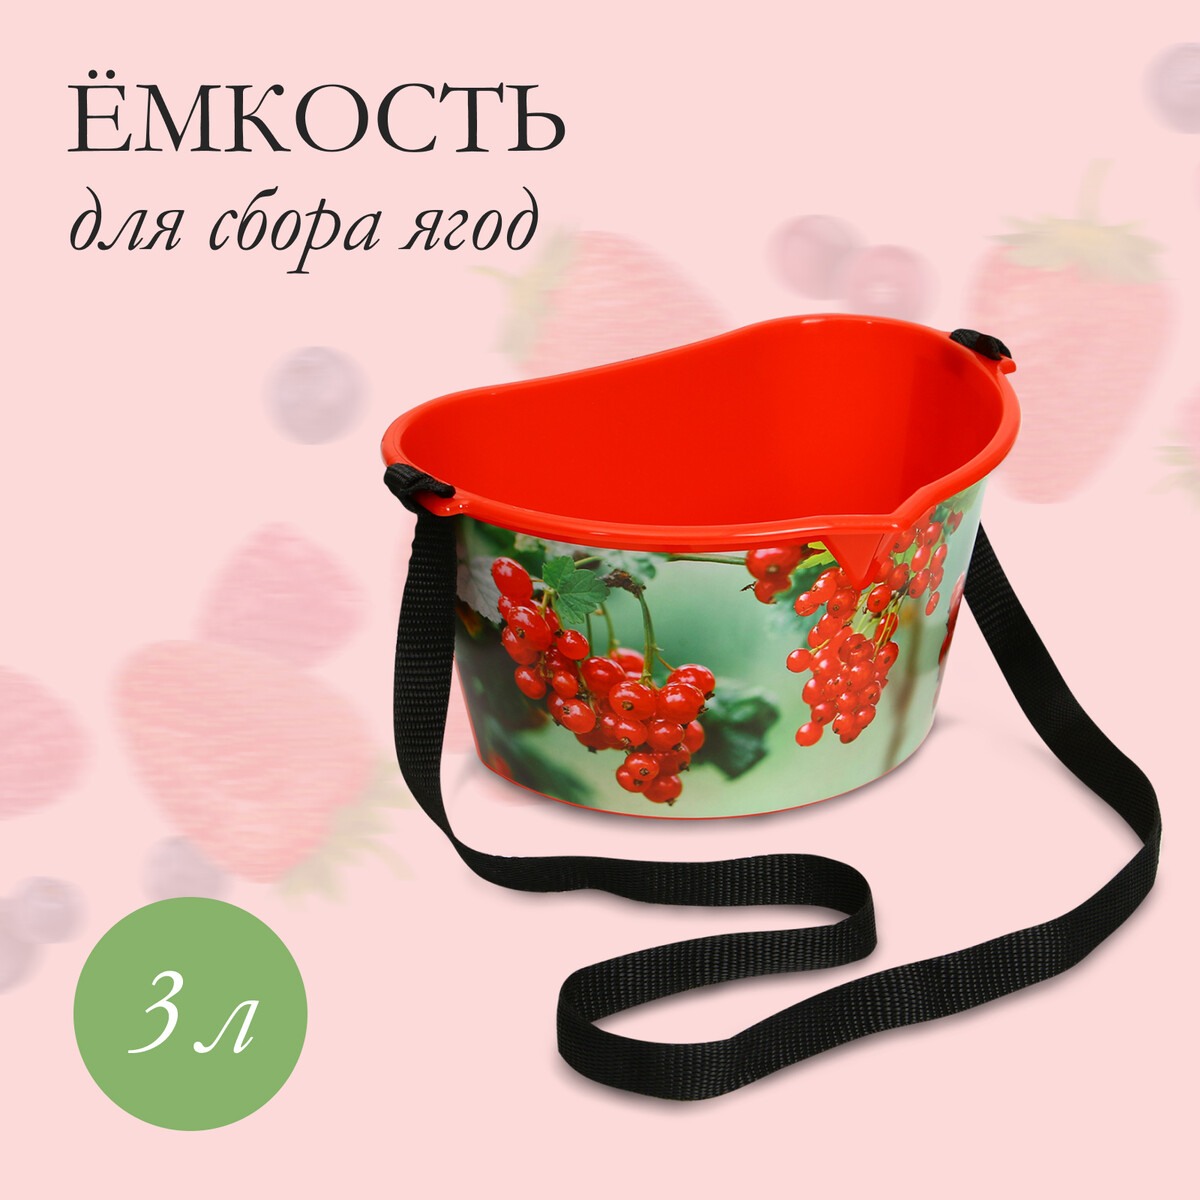 Ёмкость для сбора ягод, 3 л, ёмкость для соуса 300 мл 6×19 см красный